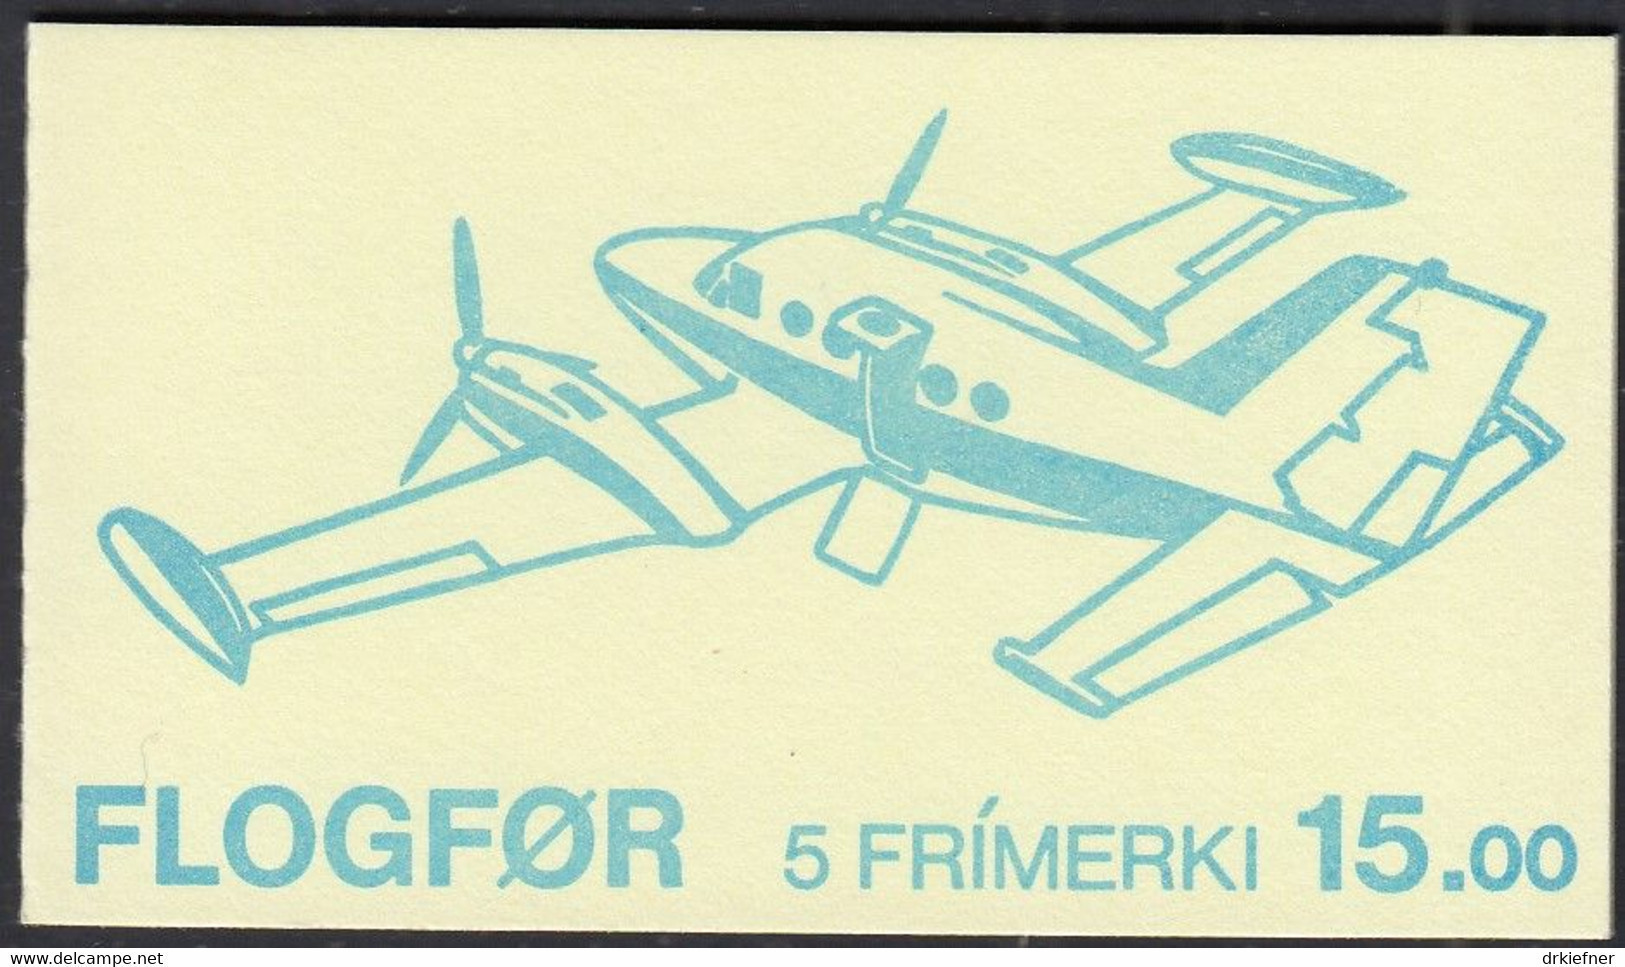 FÄRÖER Markenheftchen MH 3 Mit 125-129, Postfrisch **, Flugzeuge, 1985 - Féroé (Iles)